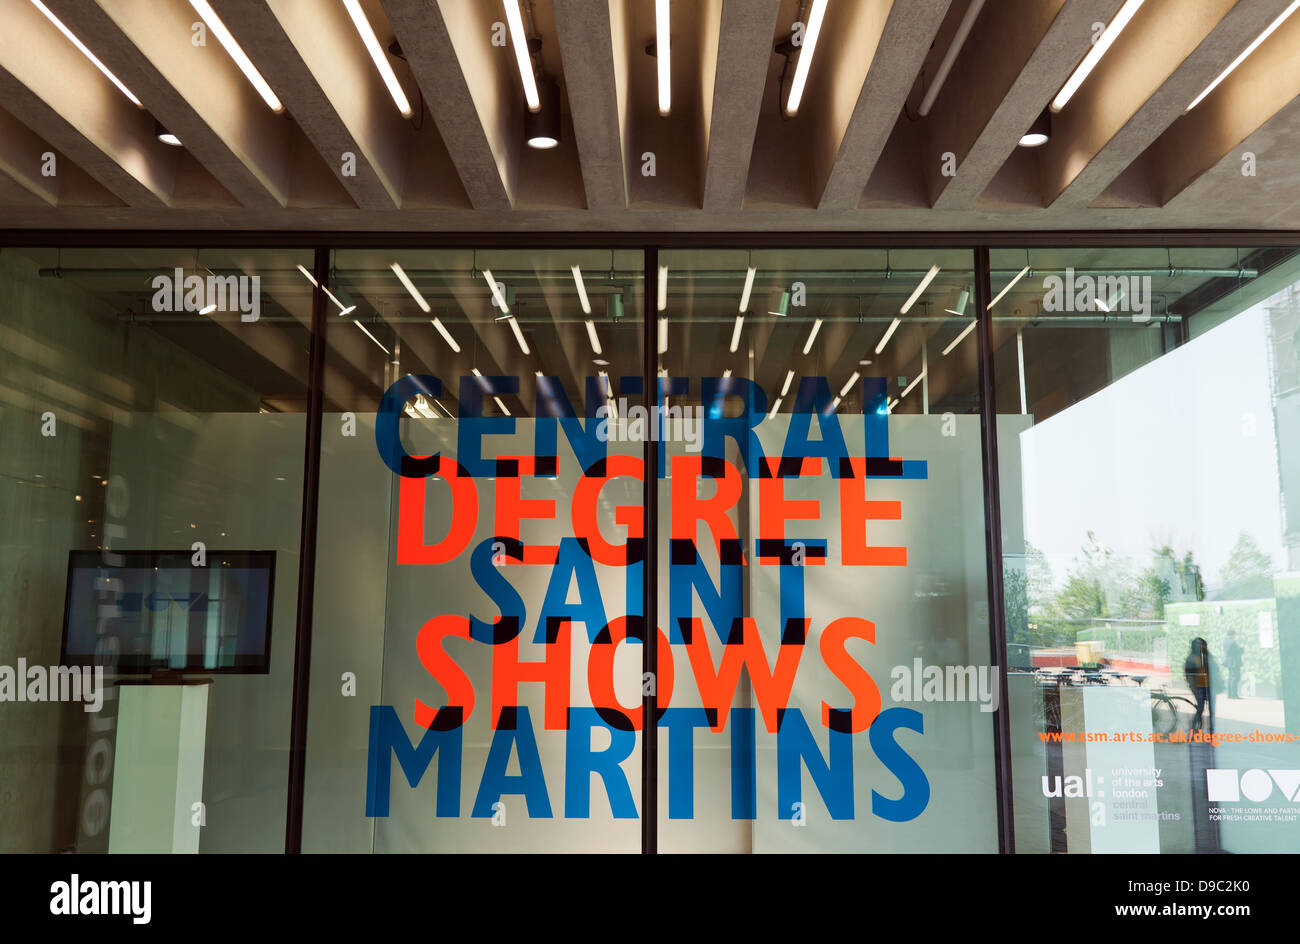 Entrée de Central St Martin's, Université de l'Art, Londres, montrant une publicité pour leur fin de l'exercice, degré show. Banque D'Images